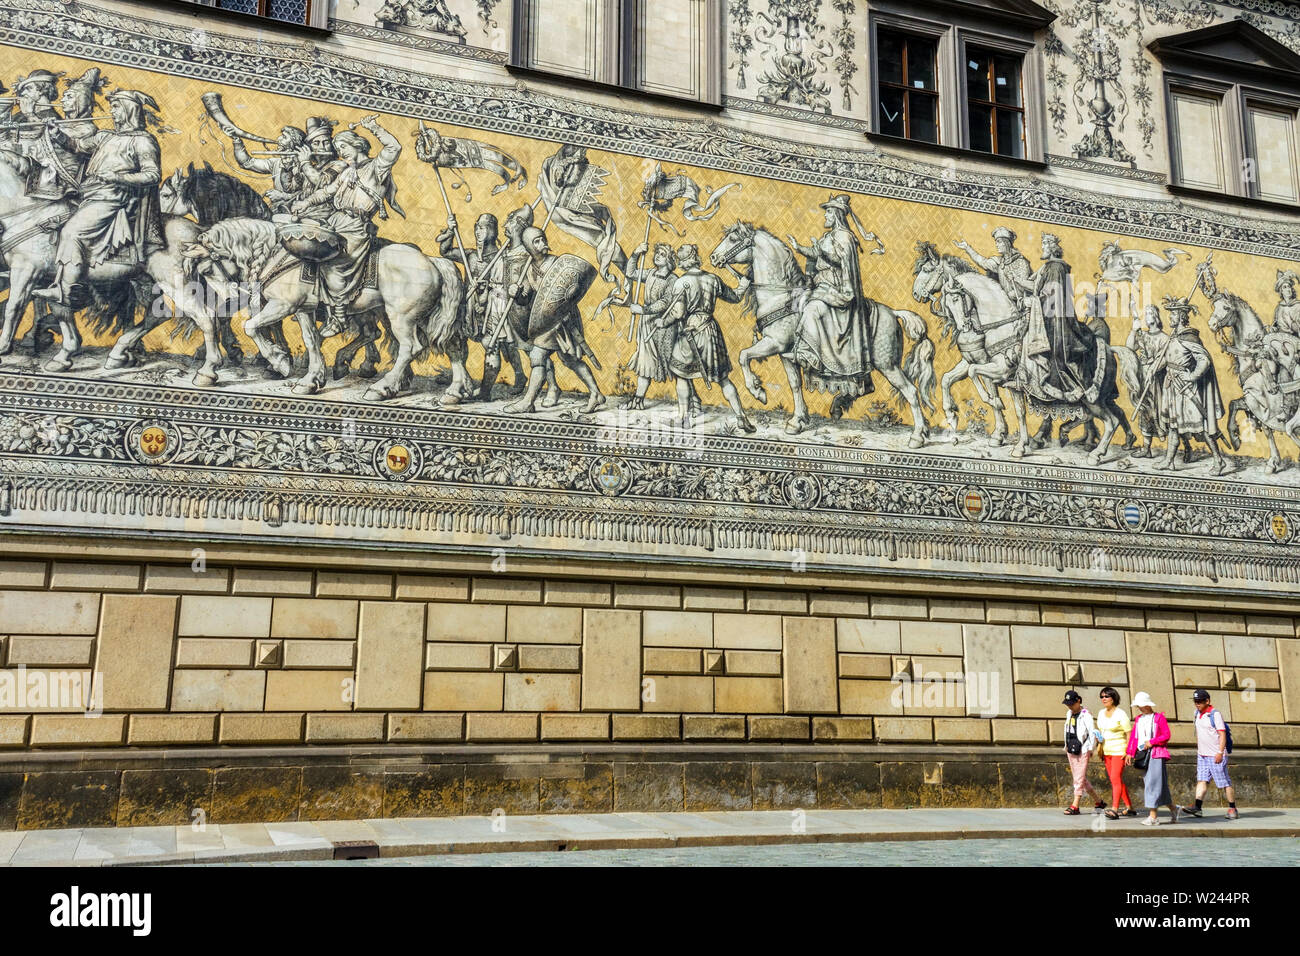 Les touristes asiatiques passant au-dessous Fürstenzug, Procession des Princes sur le mur, la vieille ville de Dresde Altstadt Augustusstrasse Allemagne Banque D'Images